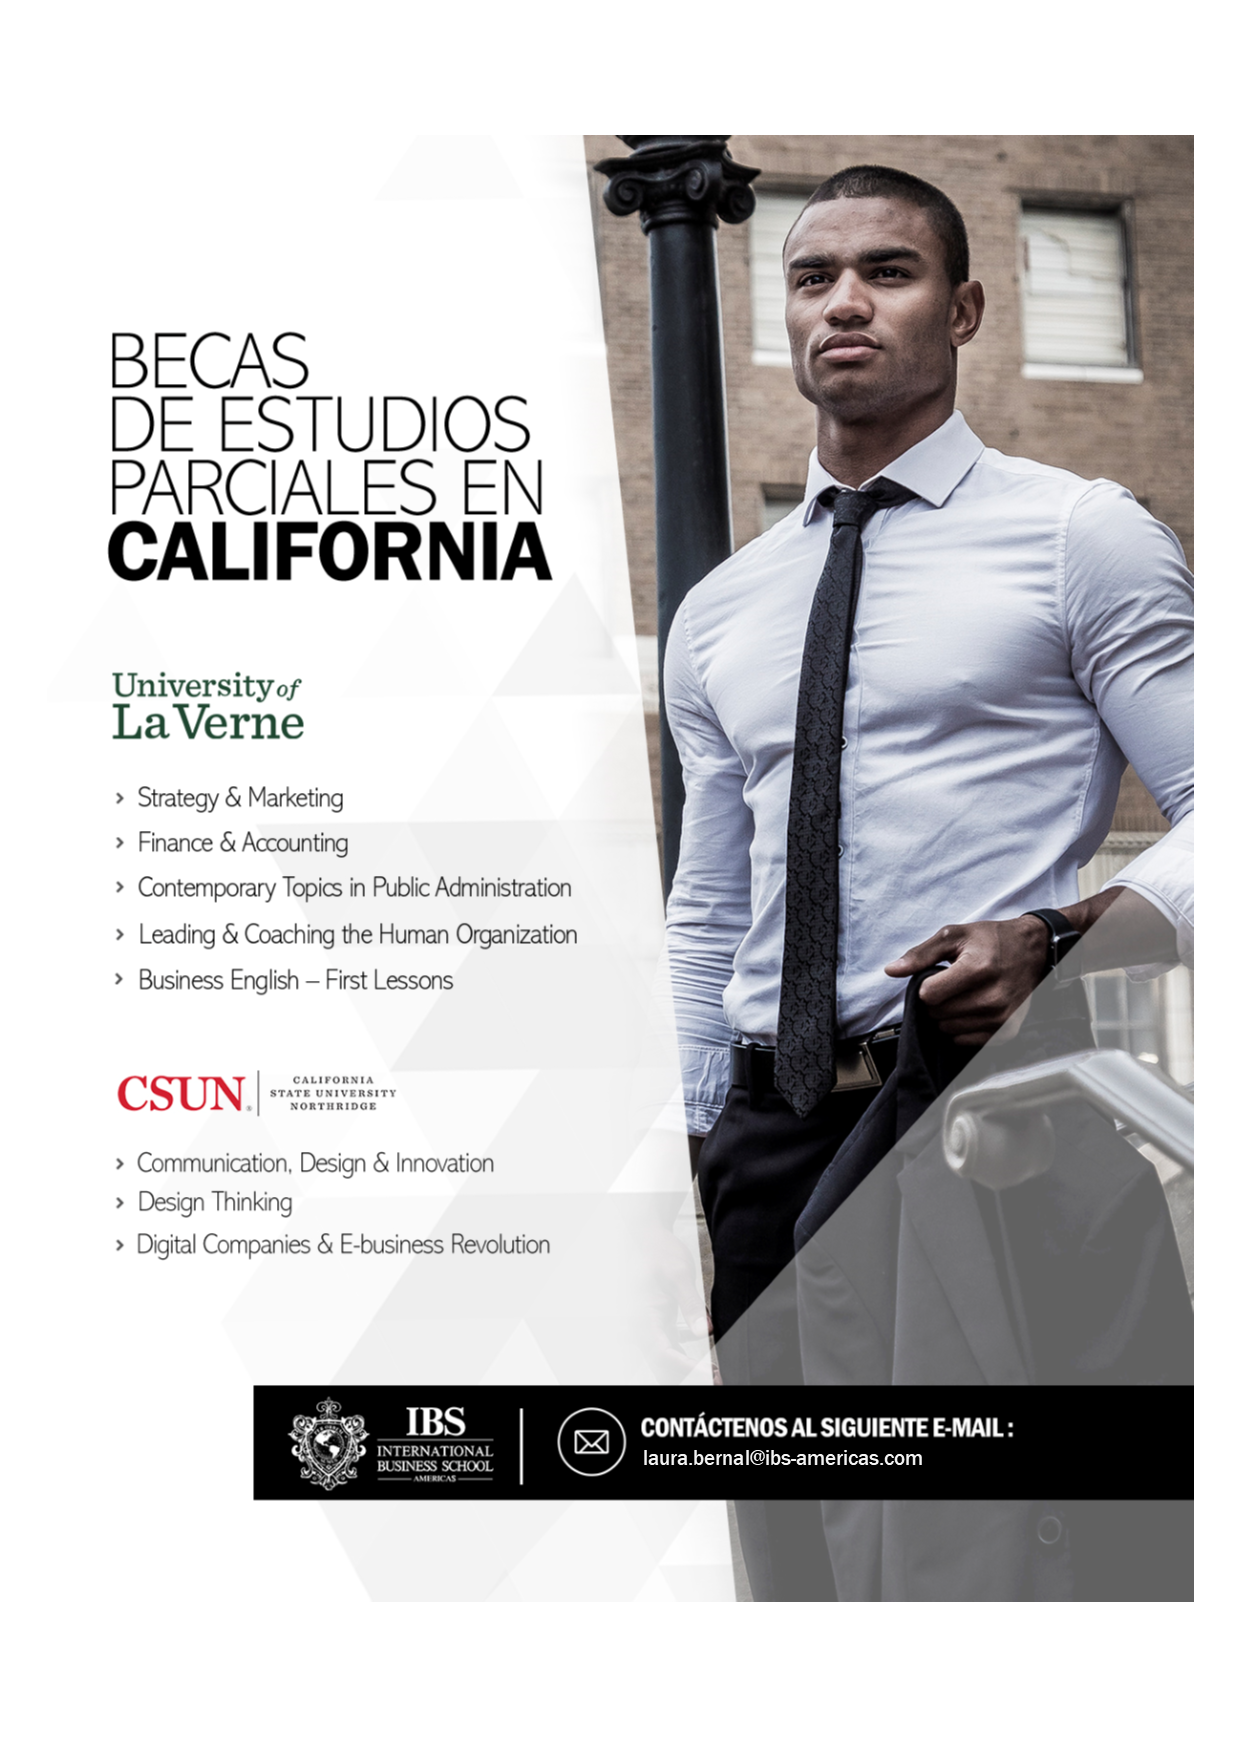 Programas de becas parciales en la California State University, Northridge y University of La Verne. - 1